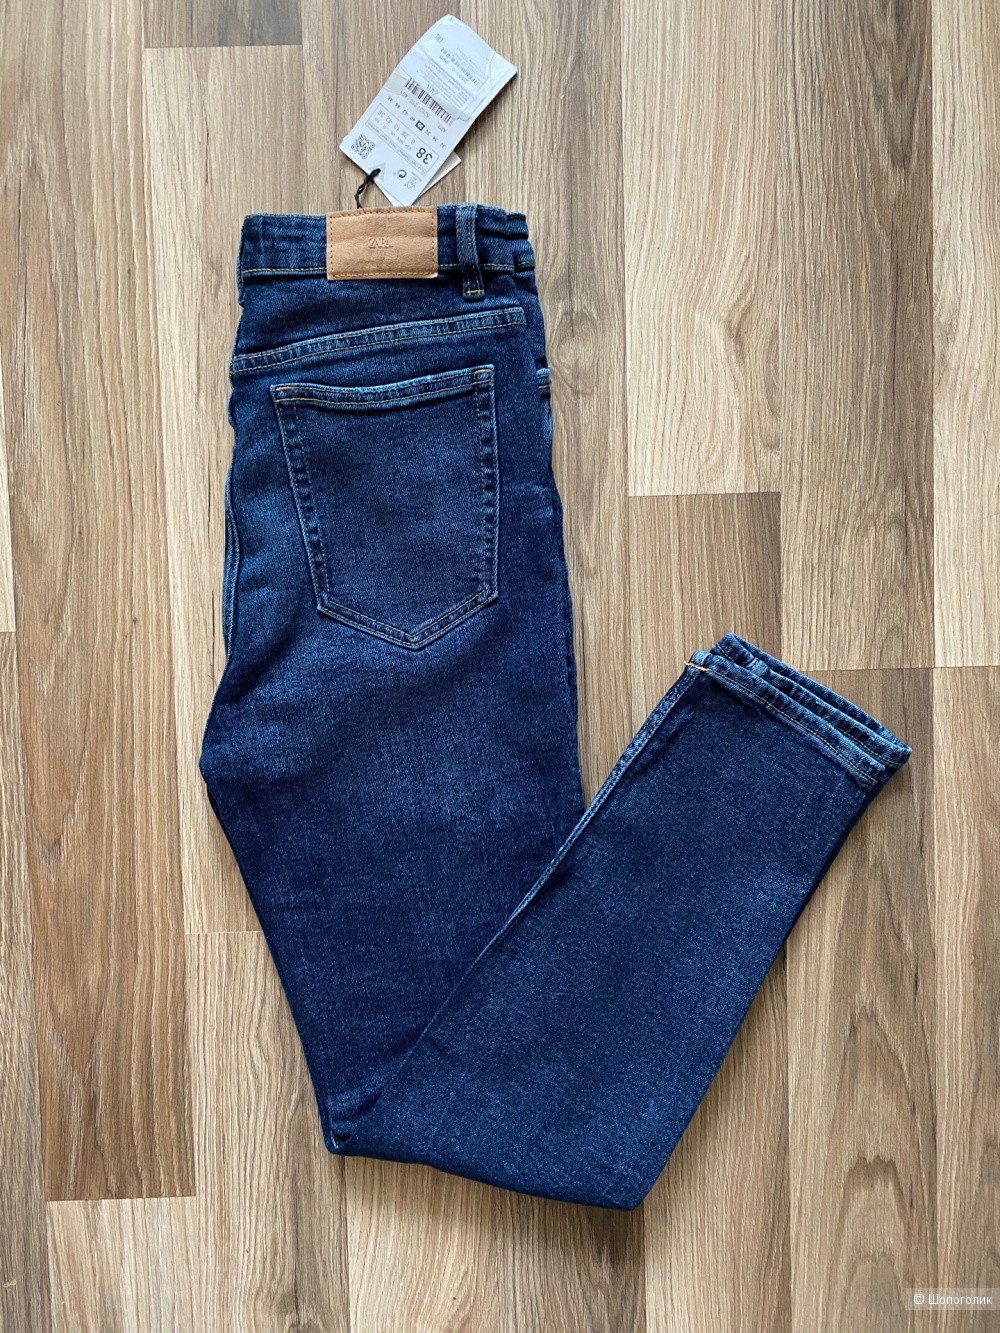 Новые джинсы Zara размер 38 (наш 44-46)